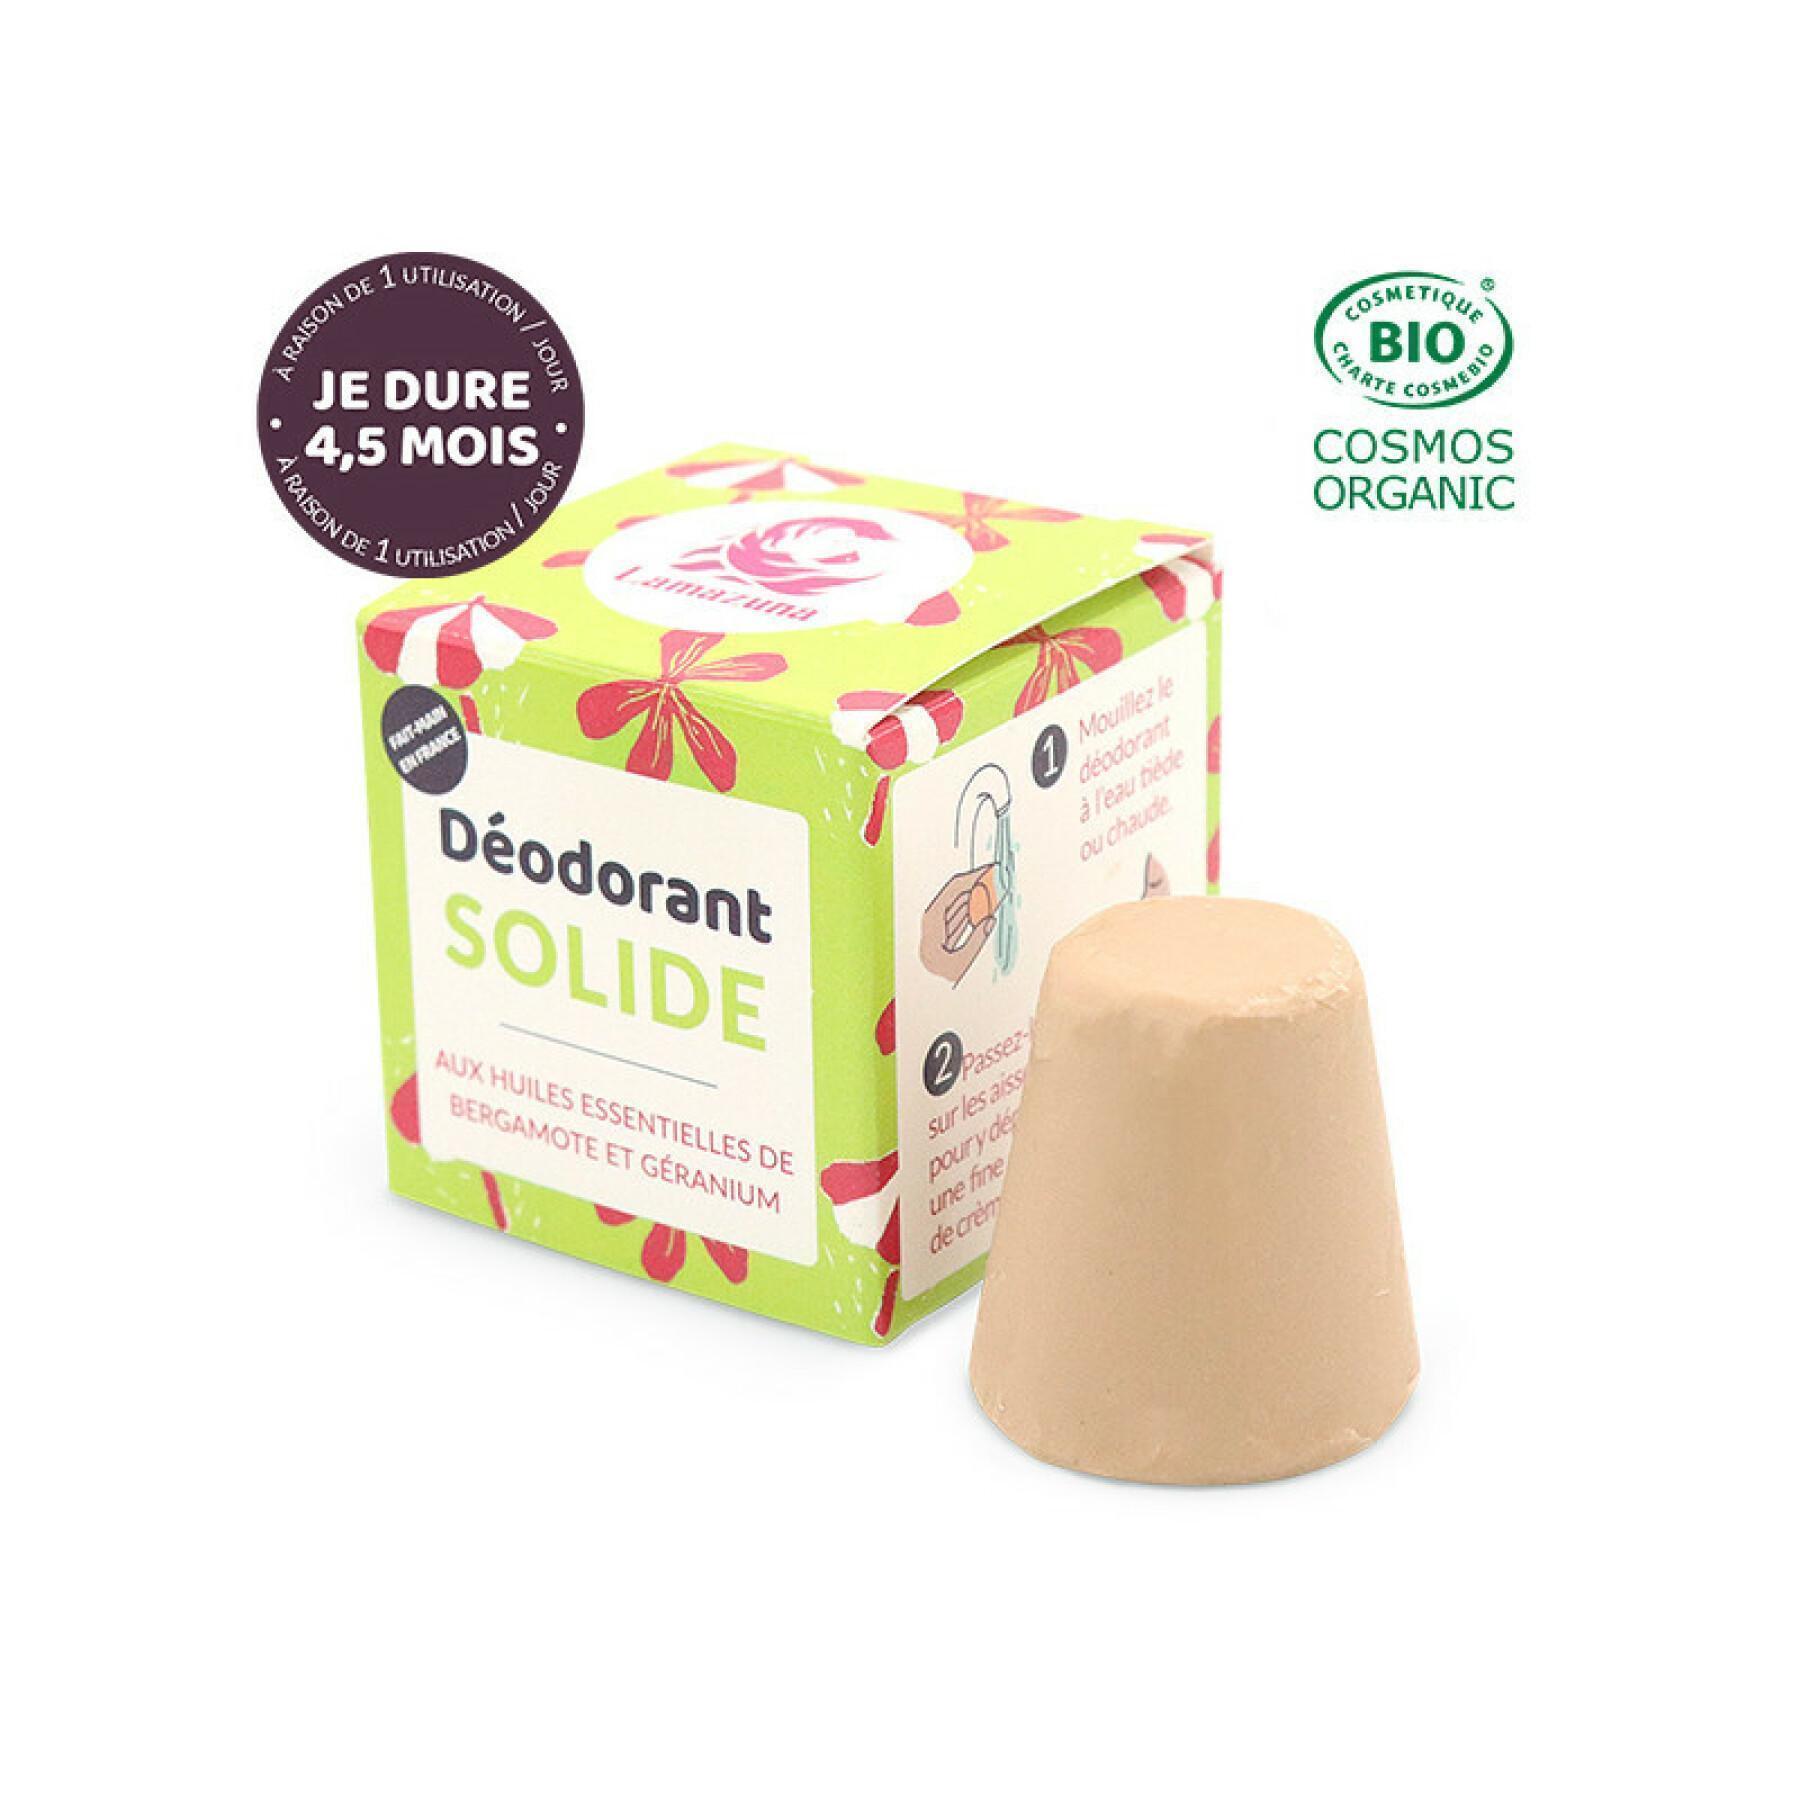 Solid deodorant - bergamot geranium Lamazuna (30 ml)